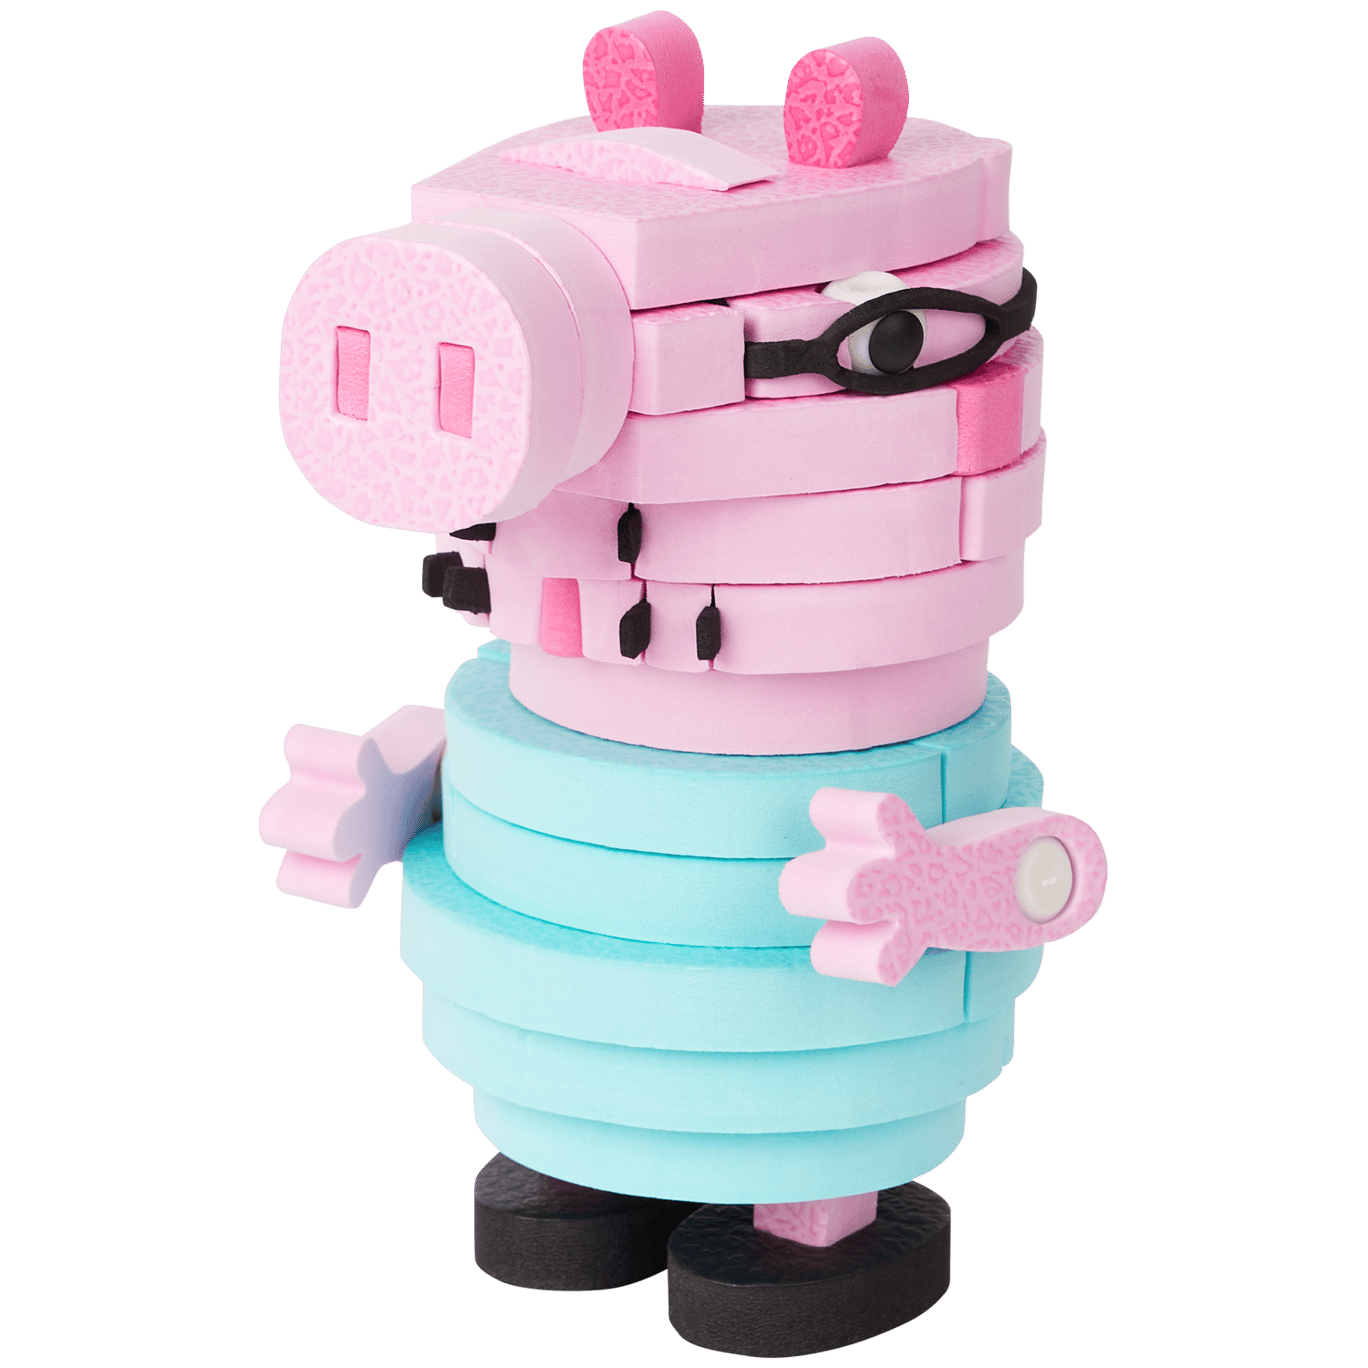 Rompecabezas de espuma en 3D Peppa Pig